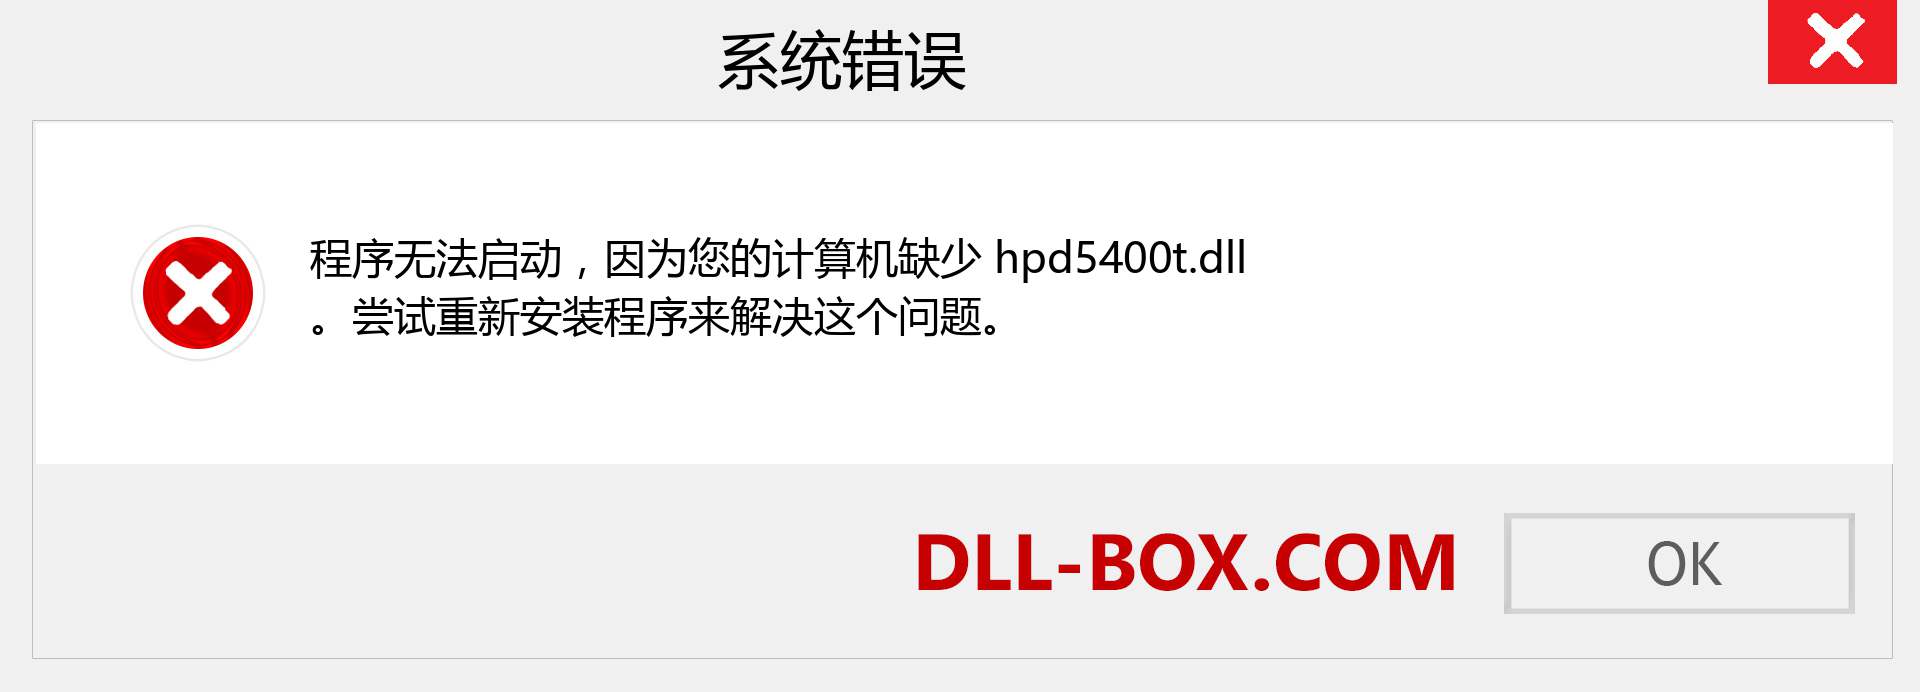 hpd5400t.dll 文件丢失？。 适用于 Windows 7、8、10 的下载 - 修复 Windows、照片、图像上的 hpd5400t dll 丢失错误